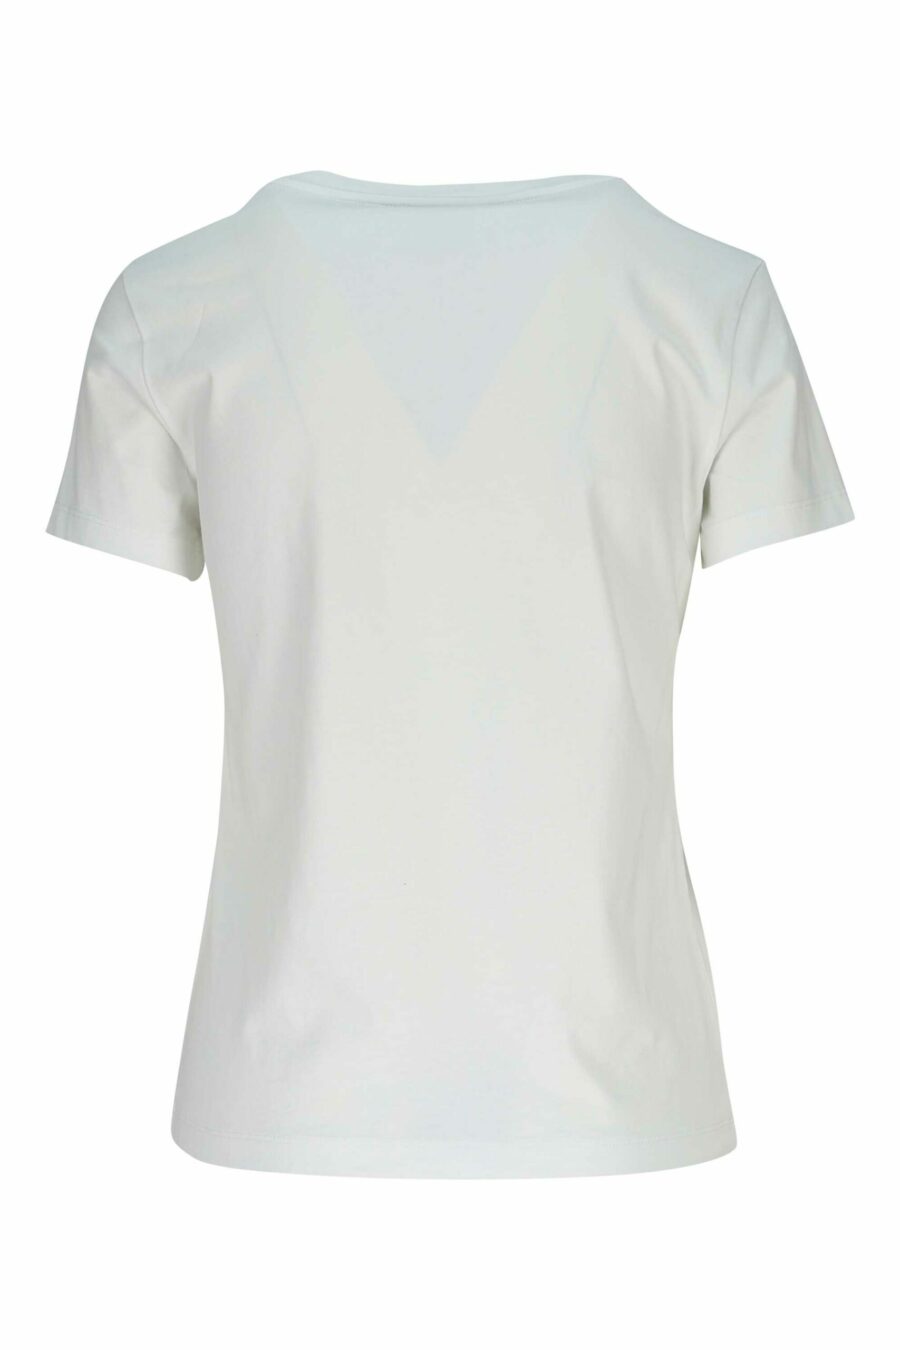 Weißes T-Shirt mit schwarzem "kenzo rose" Logo - 3612230637665 1 skaliert